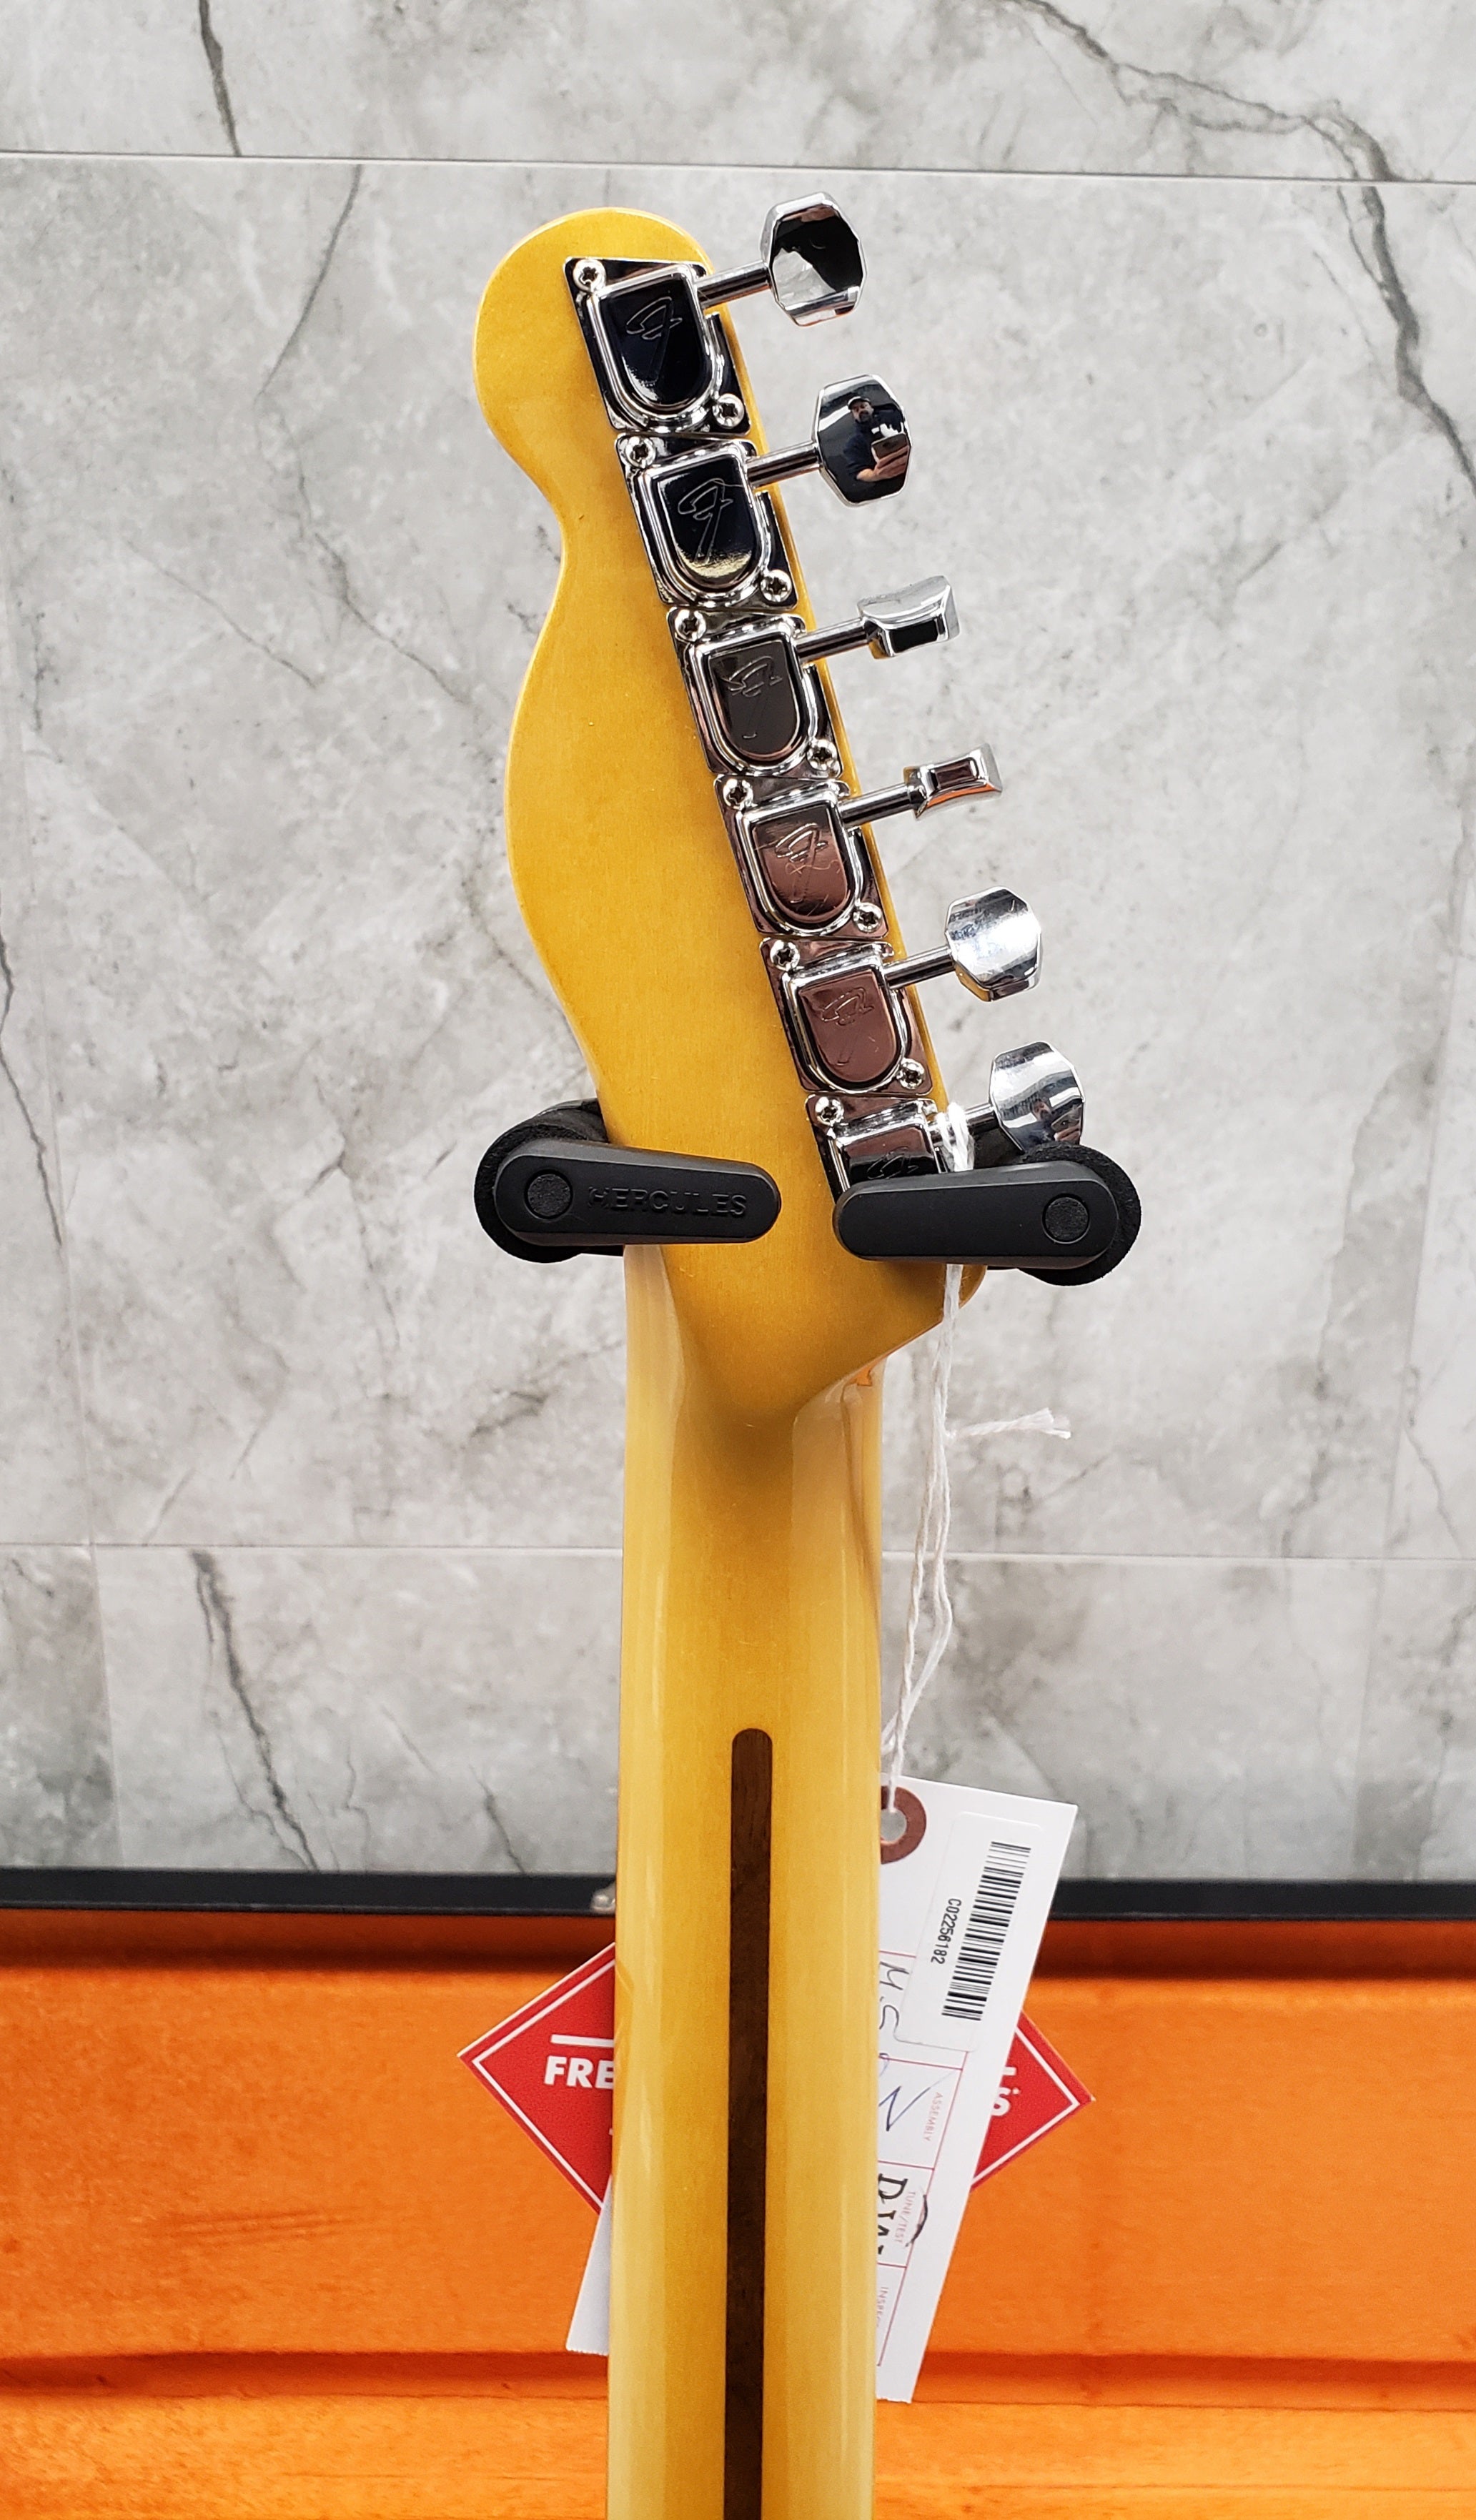 Fender American Vintage II 1977 Telecaster Custom Rosewood Fingerboard, Olympic White 0110440805 SERIAL NUMBER VS220057 - 7.8 LBS